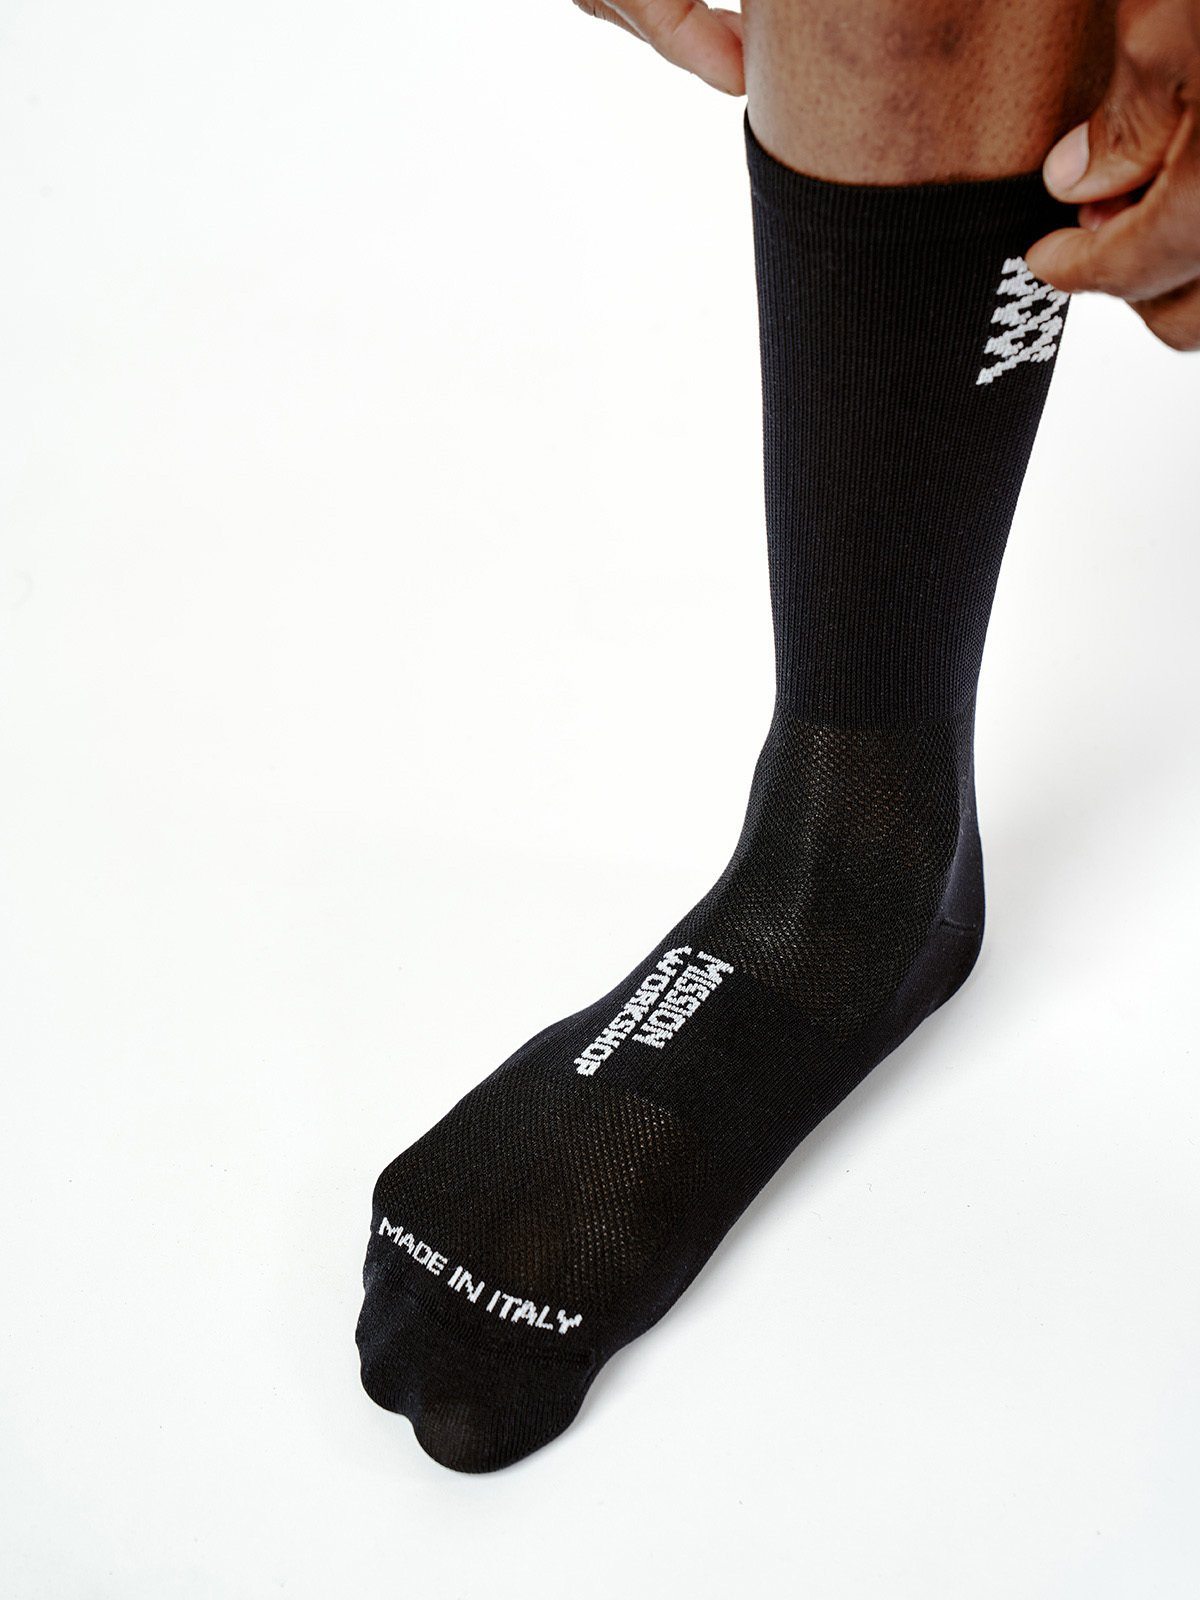 Mission Pro Socks från Mission Workshop - vädertåliga väskor och tekniska kläder - San Francisco och Los Angeles - byggda för att tåla - garanterade för alltid